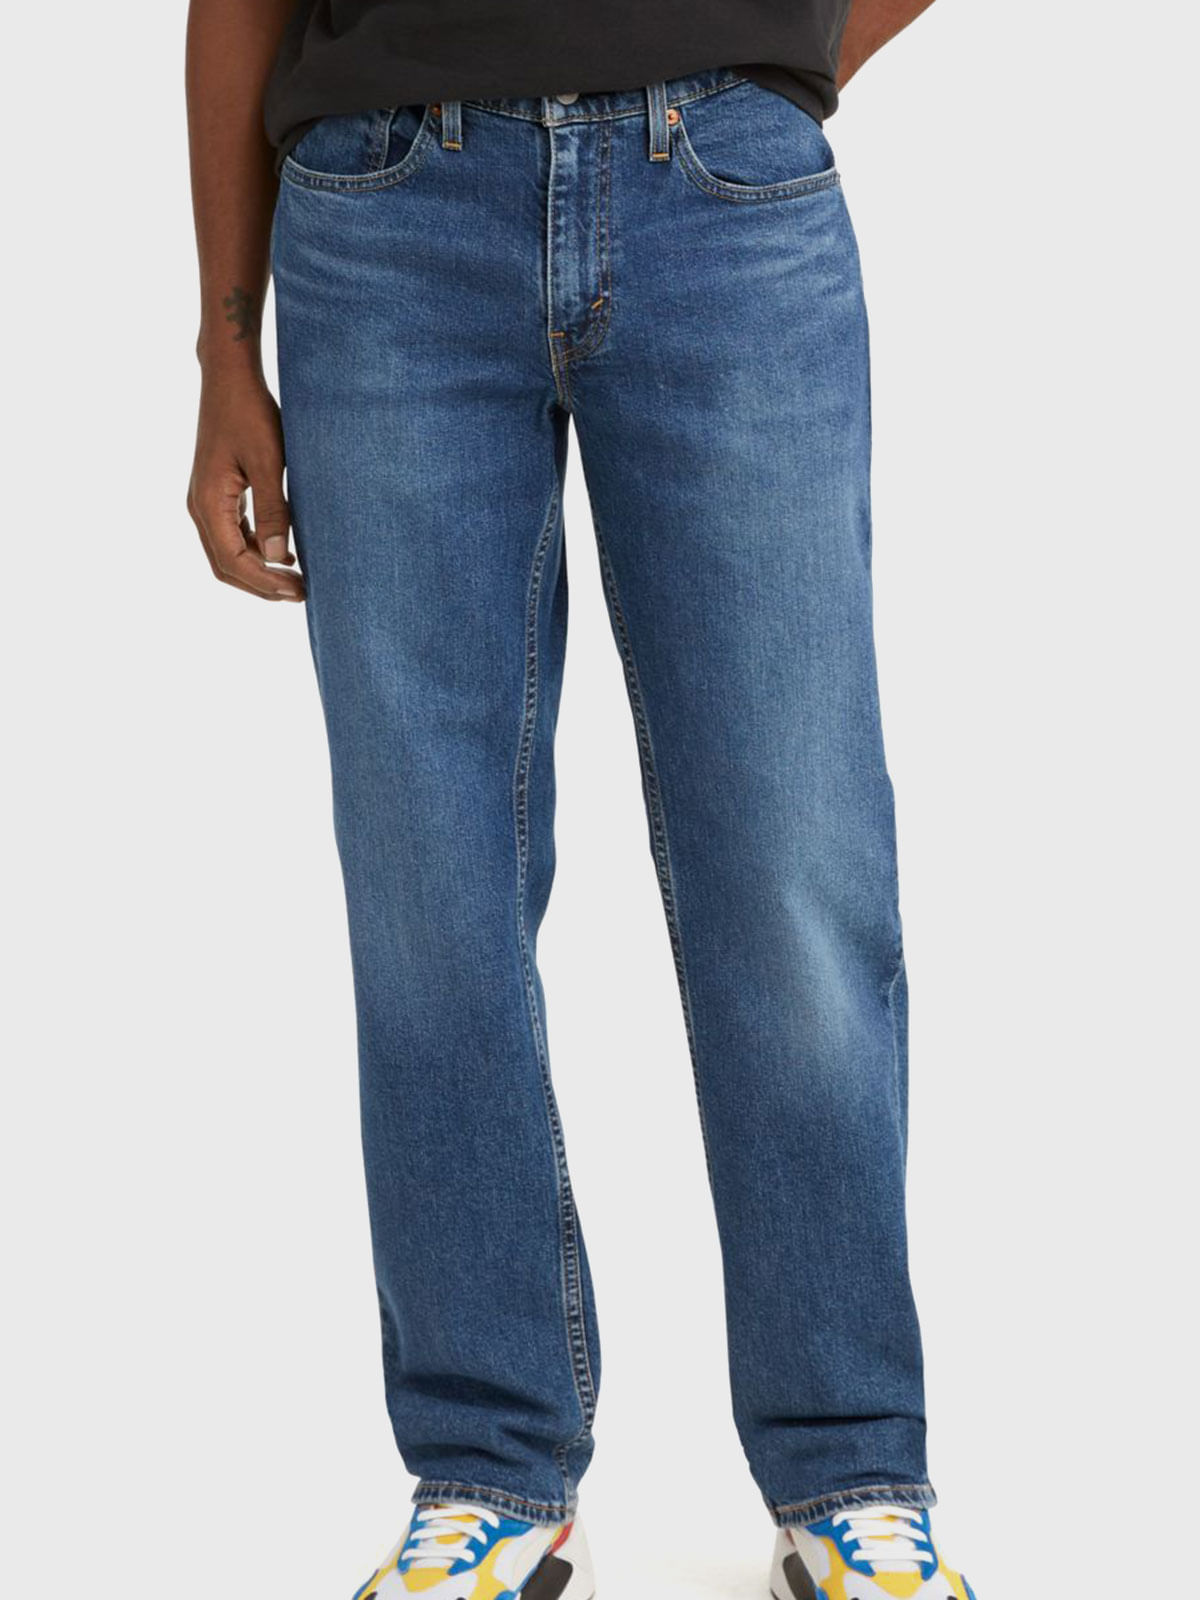 Jeans Levi's 514 para Hombre, Levi's® Panama - Tienda Oficial de Levi's  Online en Panama